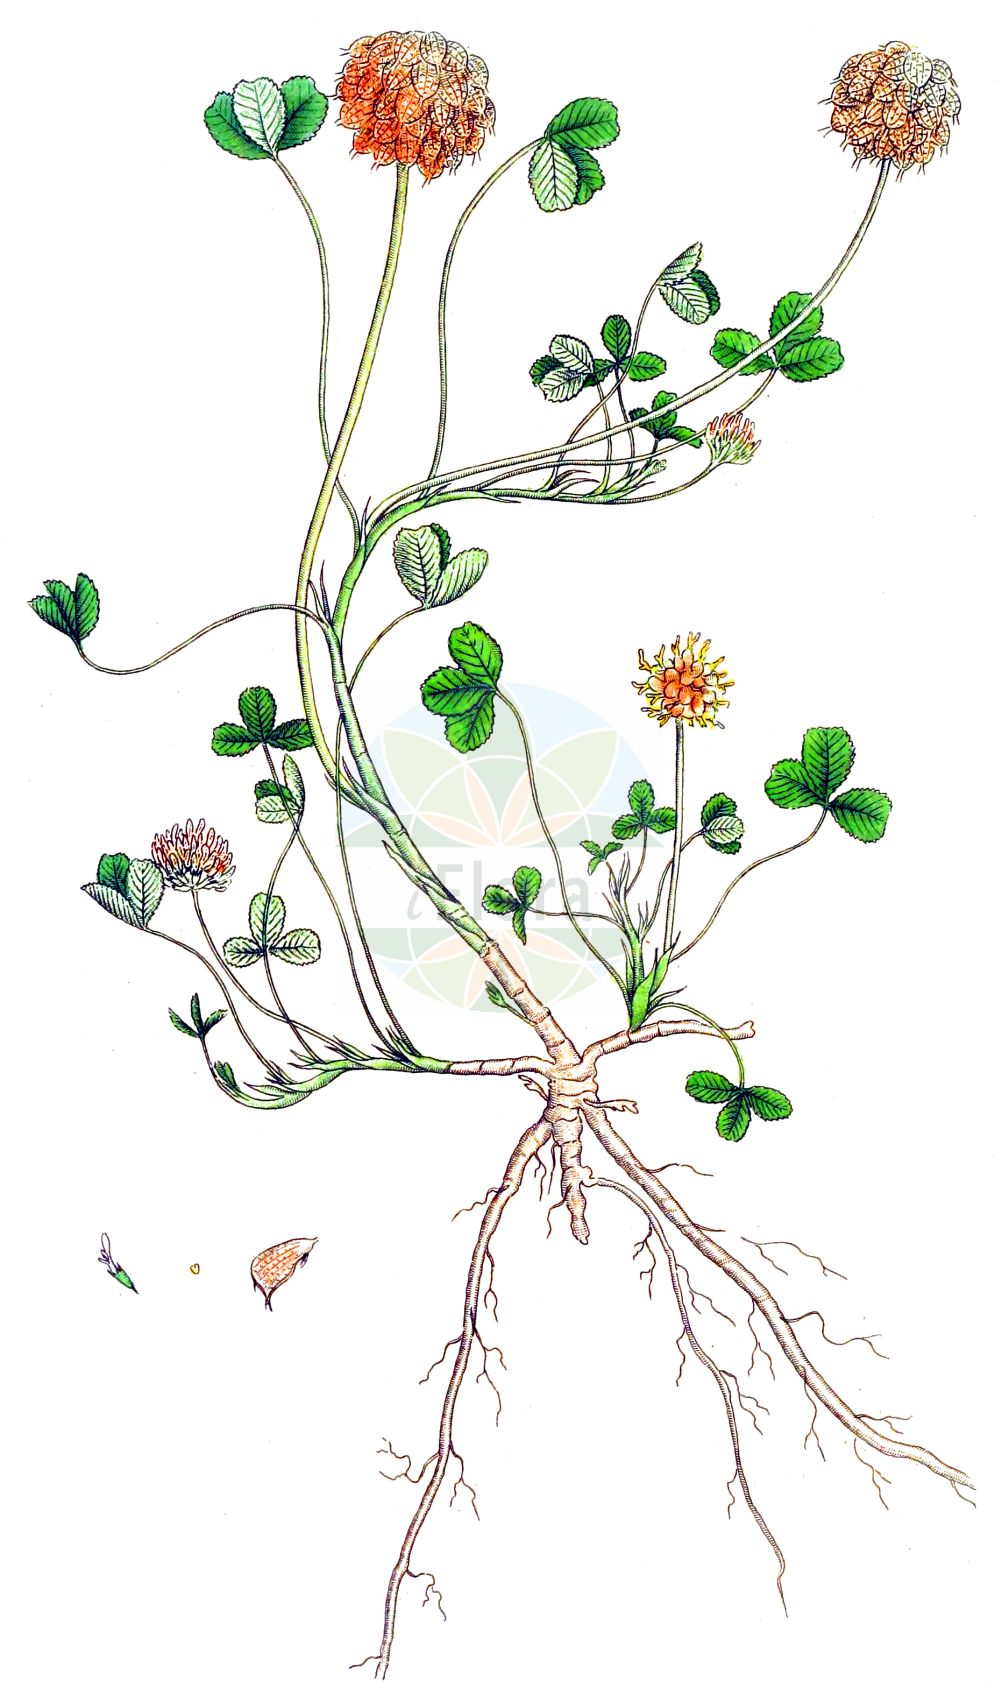 Historische Abbildung von Trifolium fragiferum (Erdbeer-Klee - Strawberry Clover). Das Bild zeigt Blatt, Bluete, Frucht und Same. ---- Historical Drawing of Trifolium fragiferum (Erdbeer-Klee - Strawberry Clover). The image is showing leaf, flower, fruit and seed.(Trifolium fragiferum,Erdbeer-Klee,Strawberry Clover,Amoria fragifera,Galearia fragifera,Trifolium fragiferum,Erdbeer-Klee,Strawberry Clover,Trifolium,Klee,Clover,Fabaceae,Schmetterlingsblütler,Pea family,Blatt,Bluete,Frucht,Same,leaf,flower,fruit,seed,Svensk Botanik (Svensk Botanik))